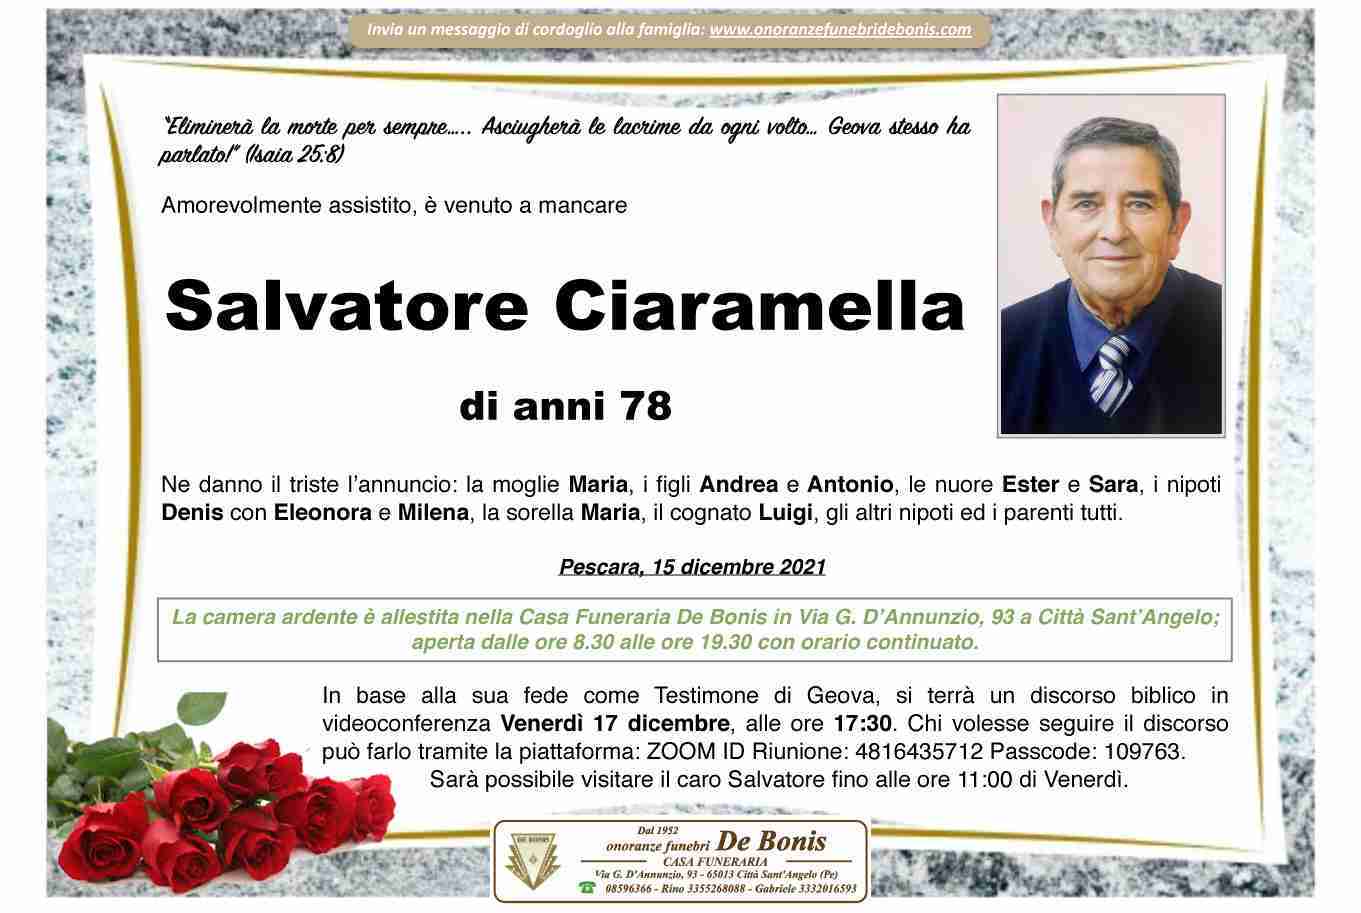 Salvatore Ciaramella